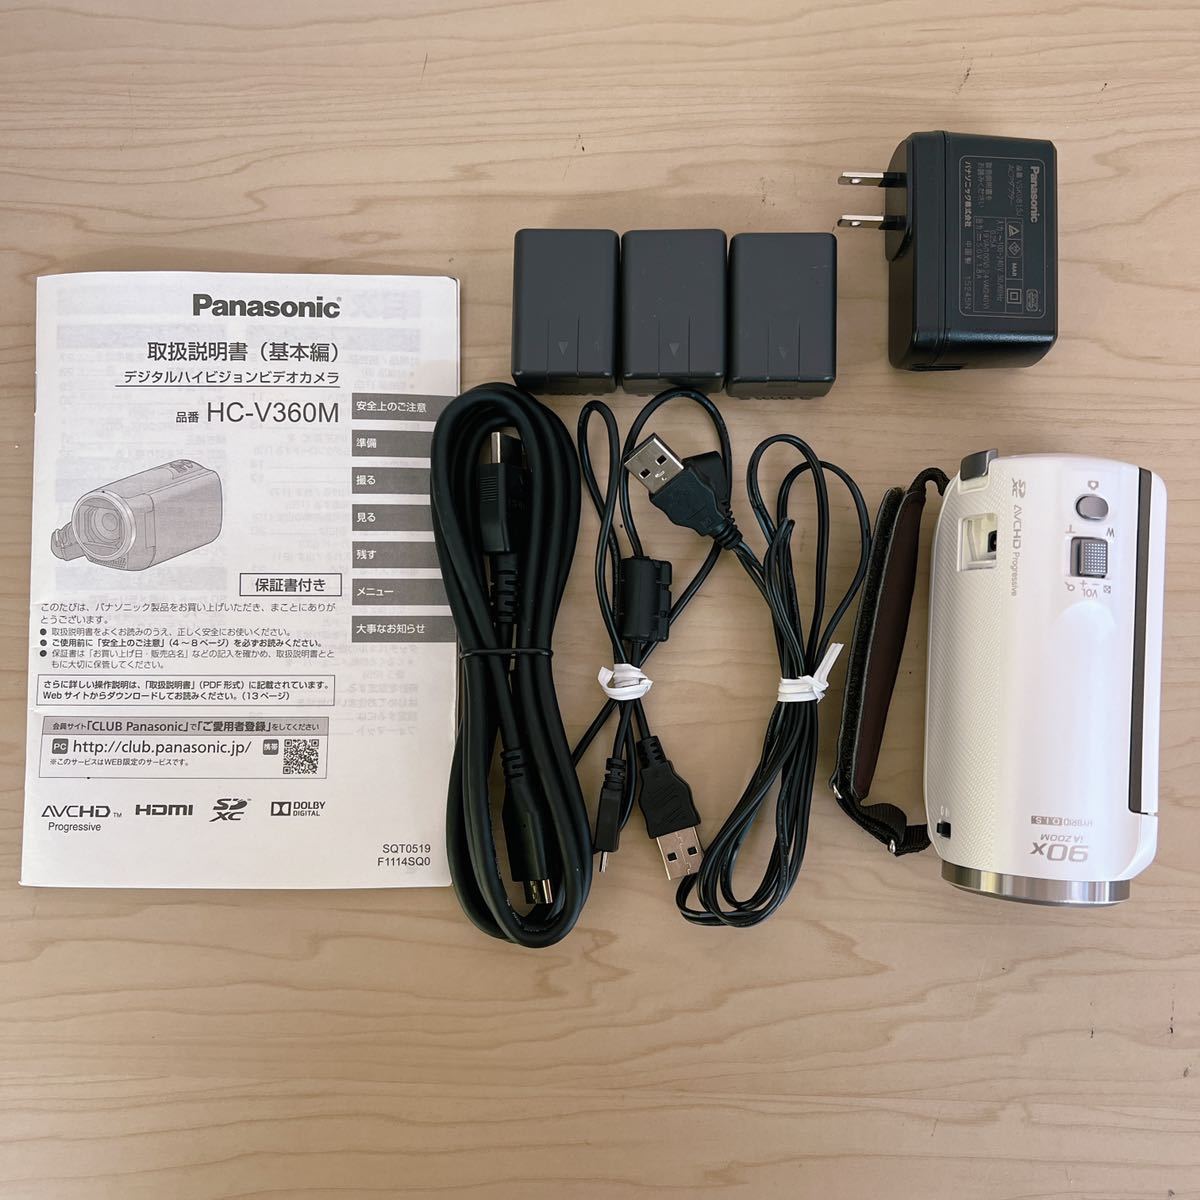 【 美品 】 Panasonic パナソニック HDビデオカメラ V360M 高倍率90倍ズーム ホワイト HC-V360M-W 予備バッテリー 2015年製 動作確認済 - 1